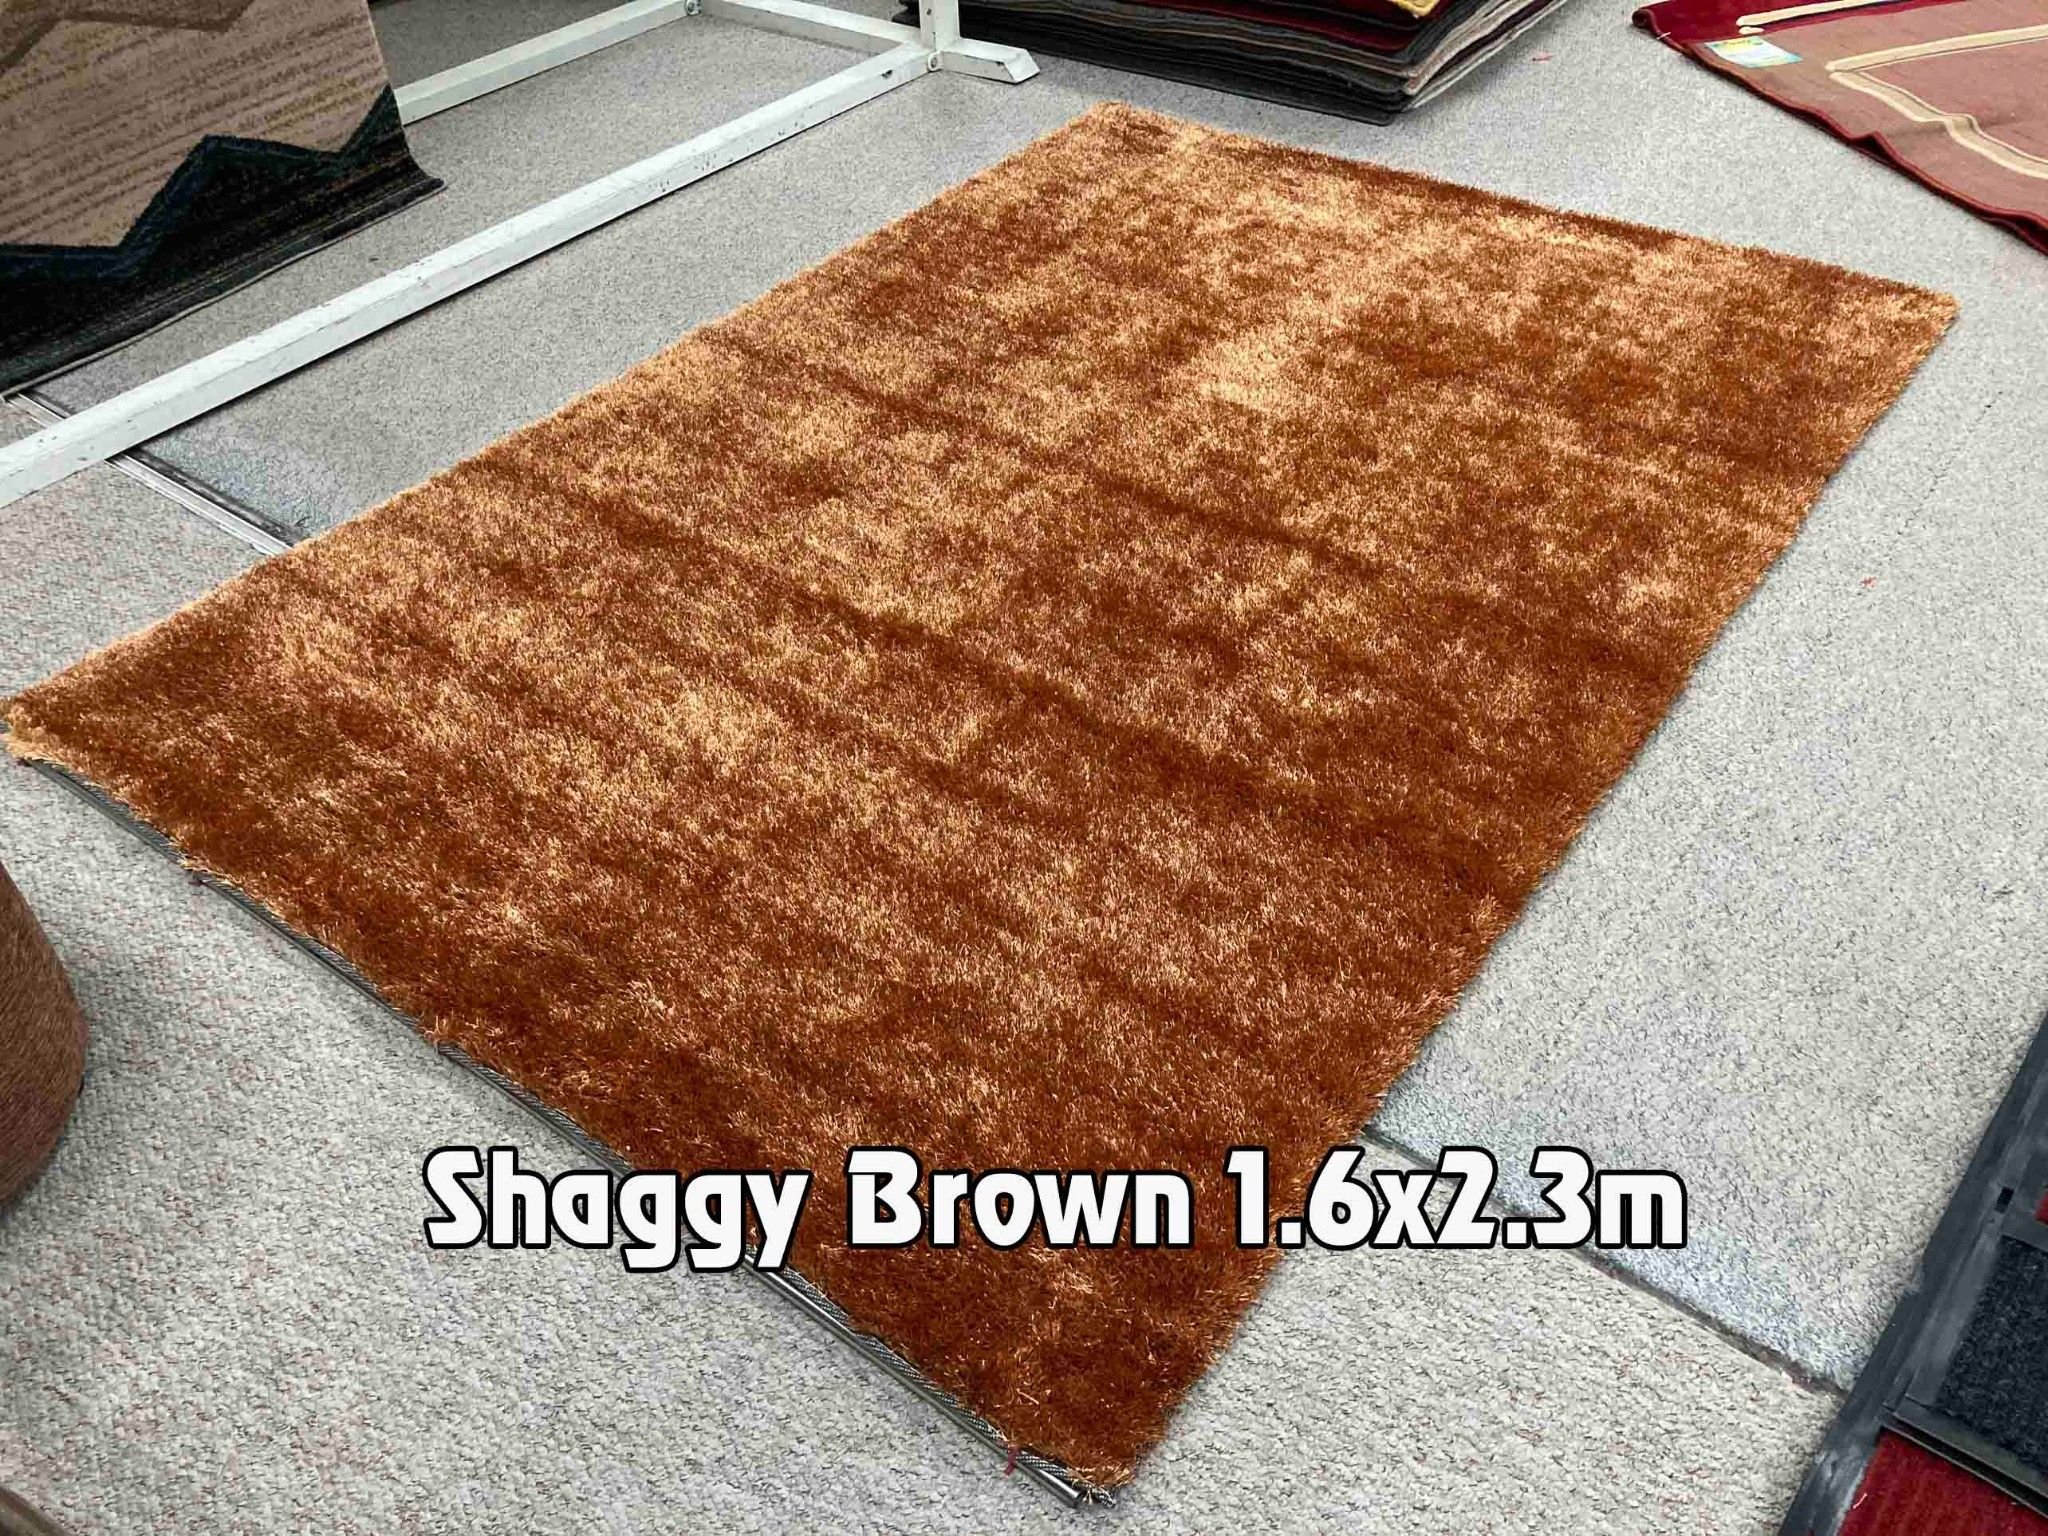  Thảm sofa màu vàng đồng Shaggy brown 1.6x2.3m 